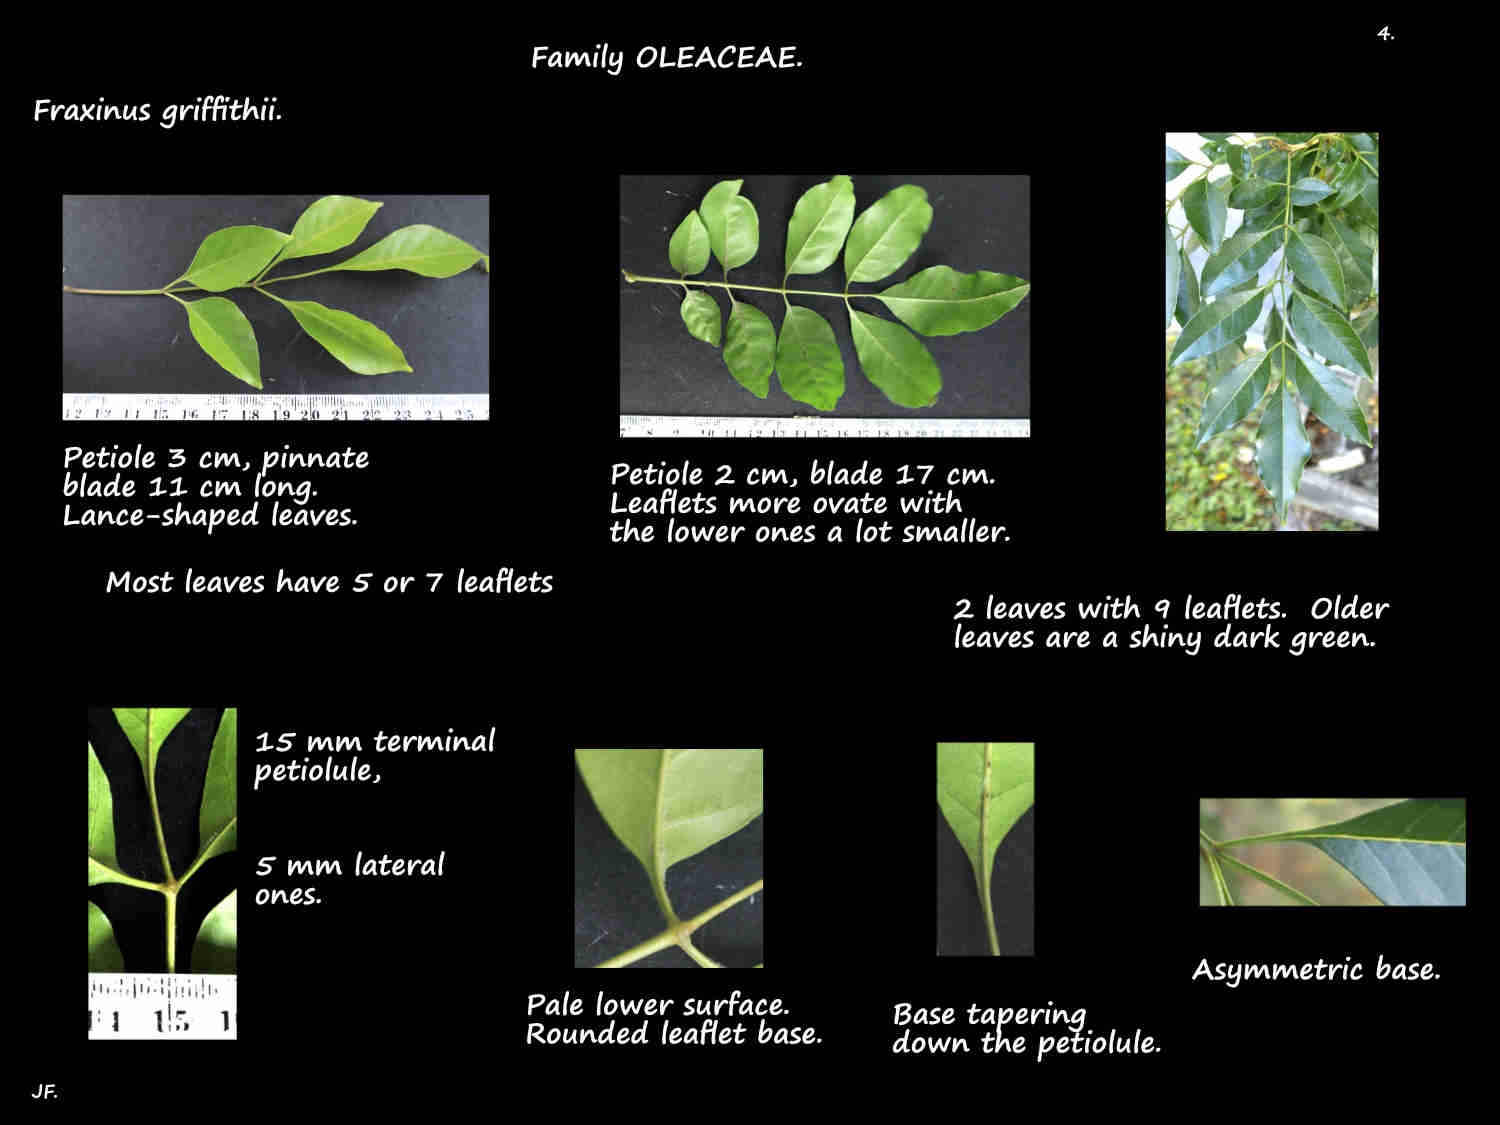 4 Pinnate Fraxinus griffithii leaves